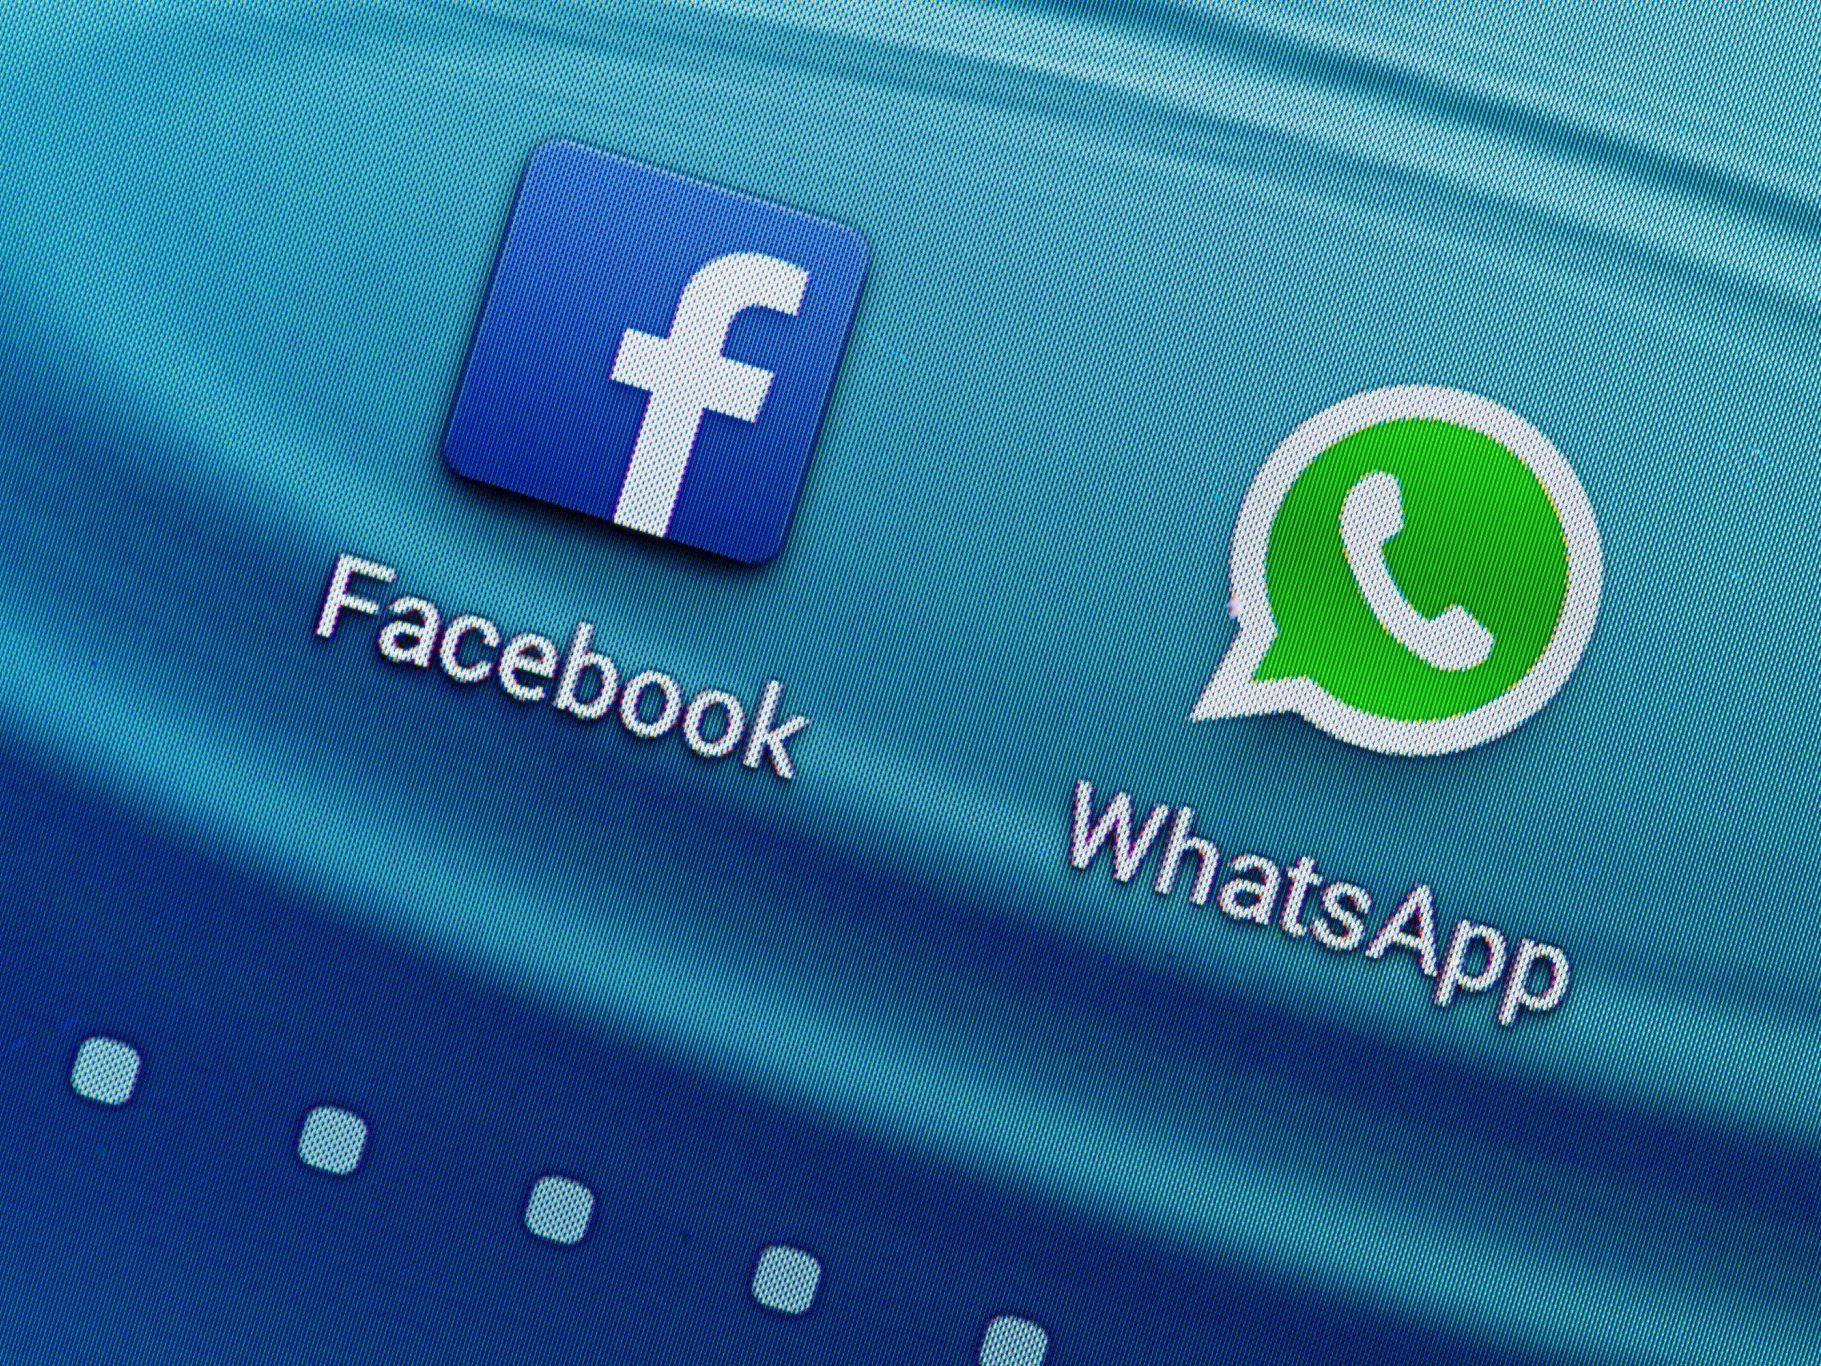 Der erste Schritt zur Verknüpfung von WhatsApp und Facebook ist gemacht.